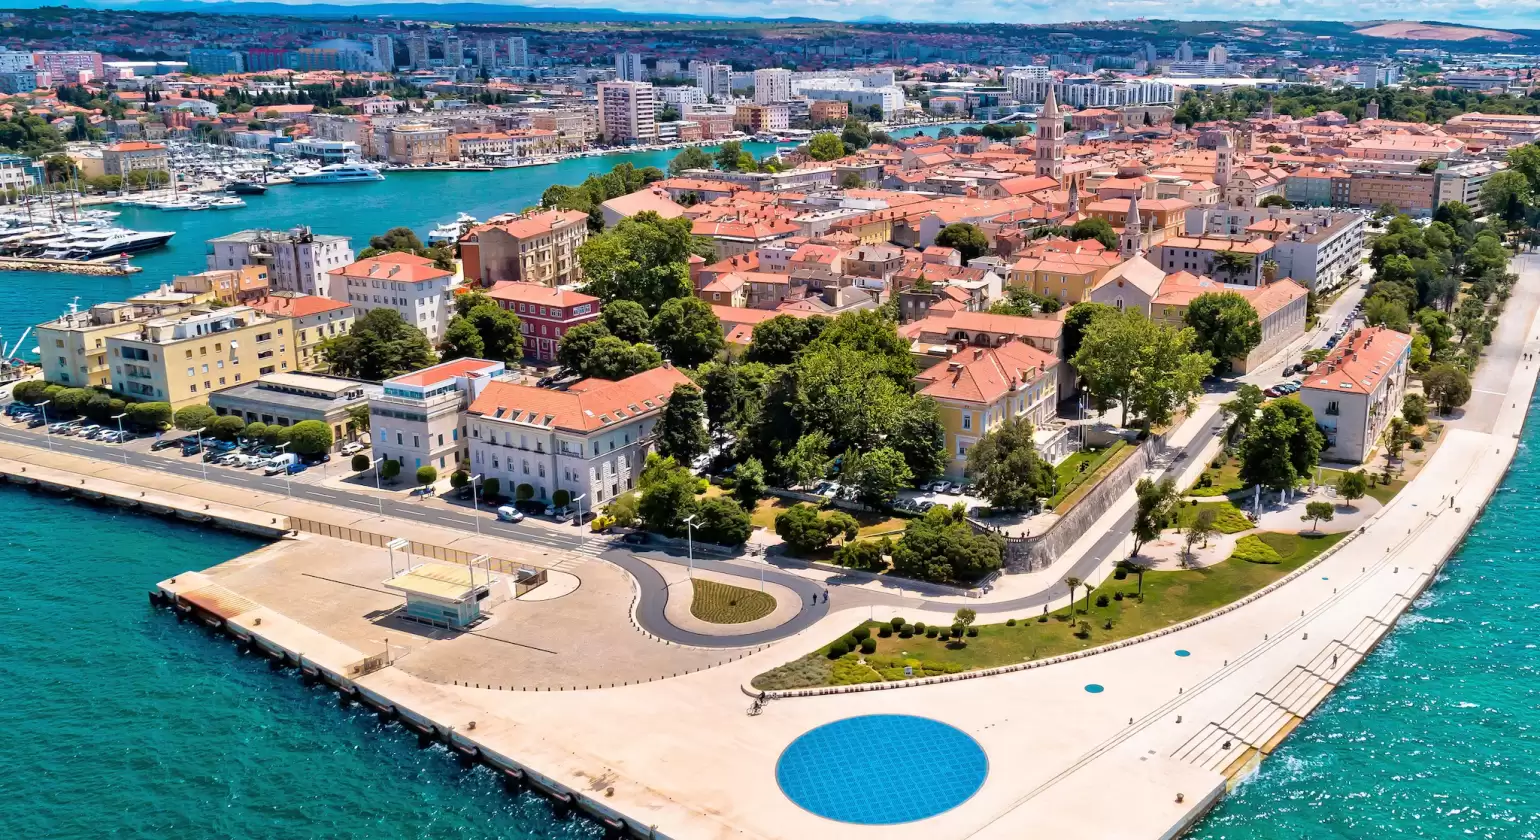 DAY 7: Žut to Zadar